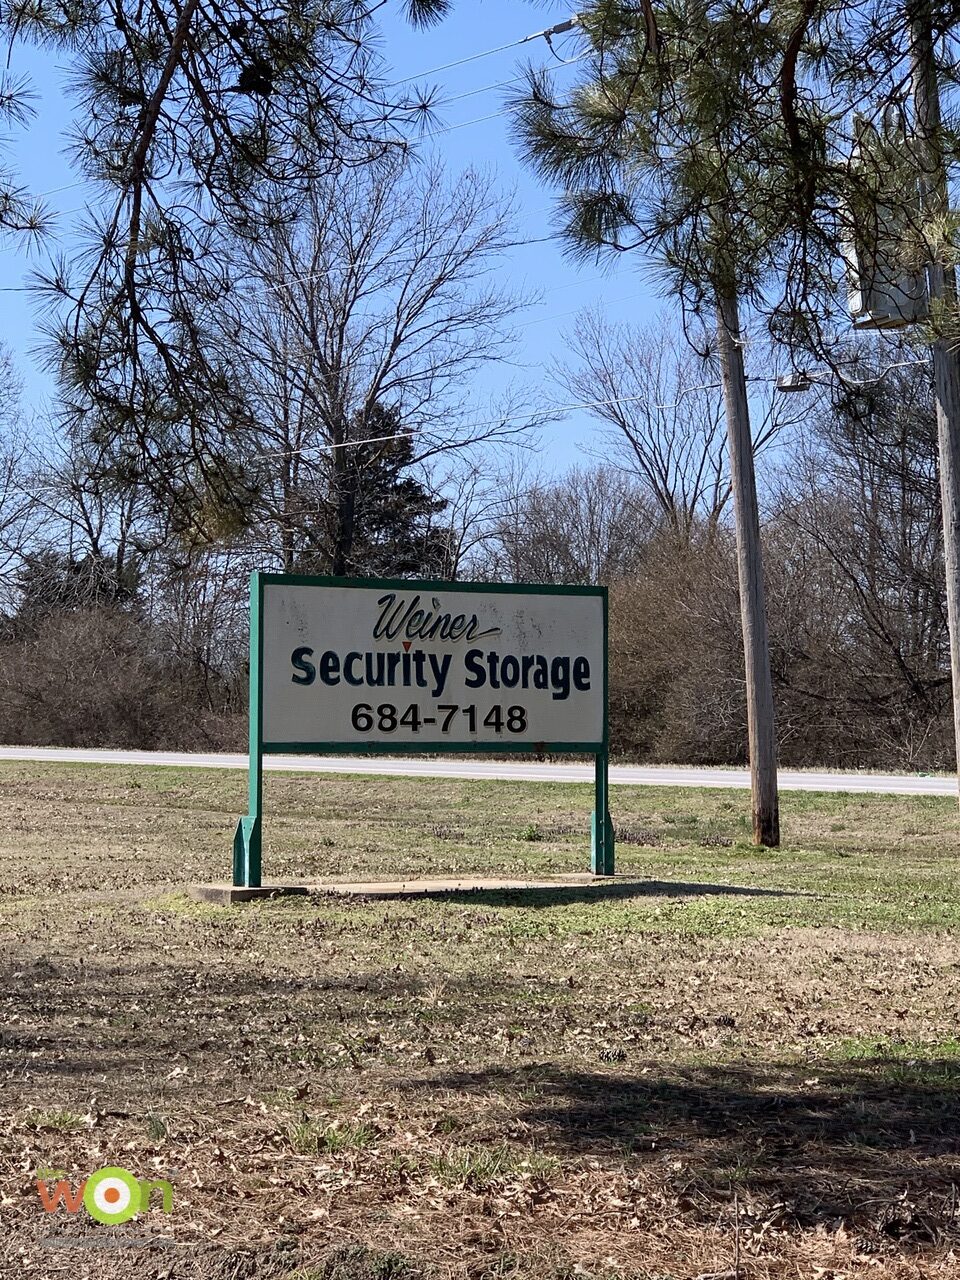 Weiner security storage